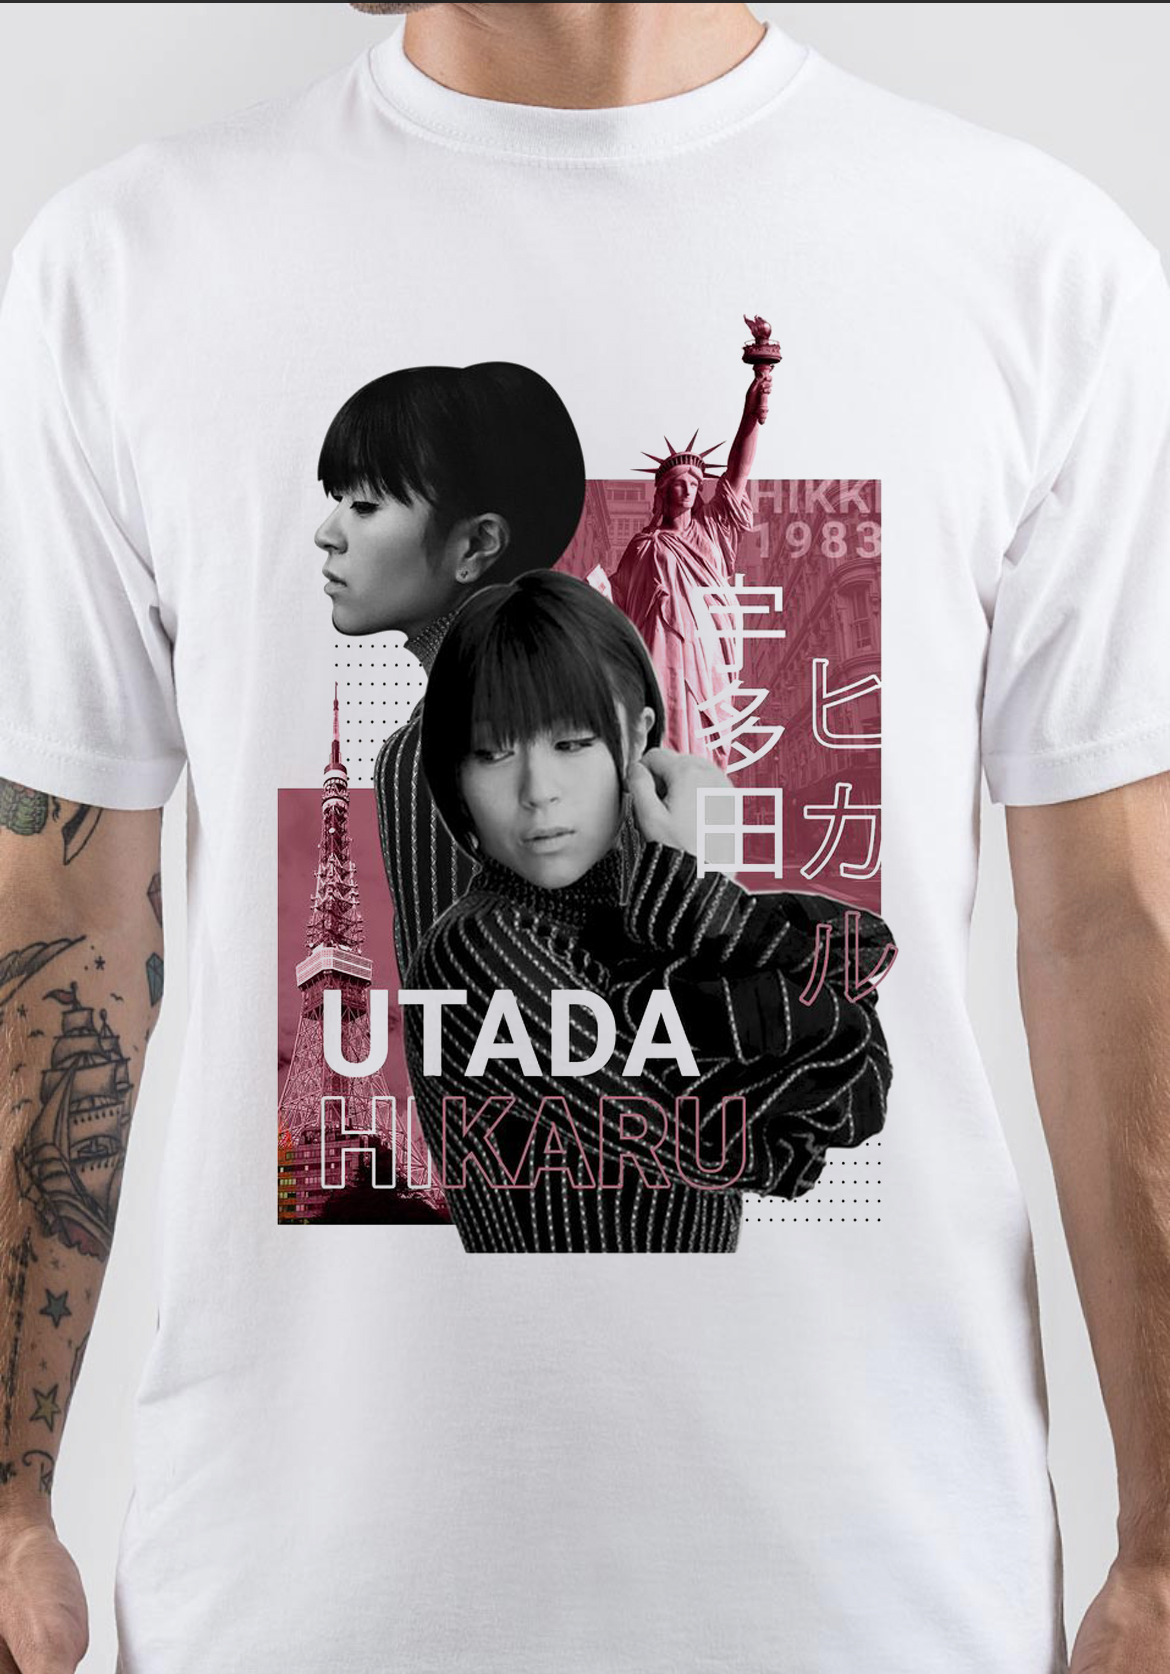 Hikaru Utada T-Shirt And Merchandise